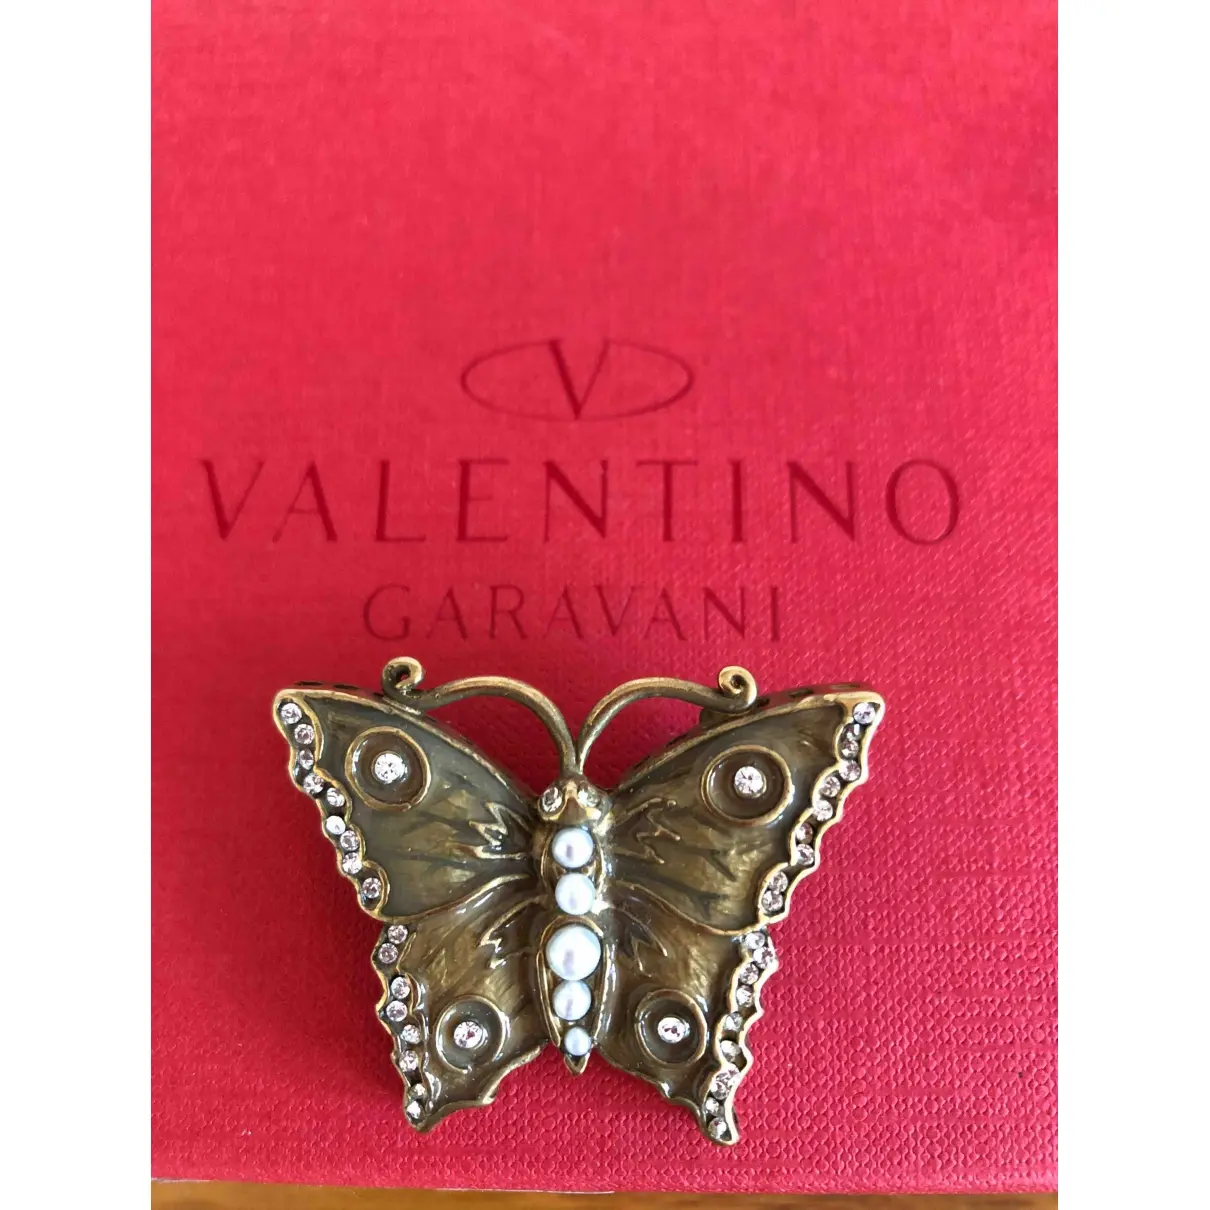 Valentino Garavani Pin & brooche for sale - Vintage